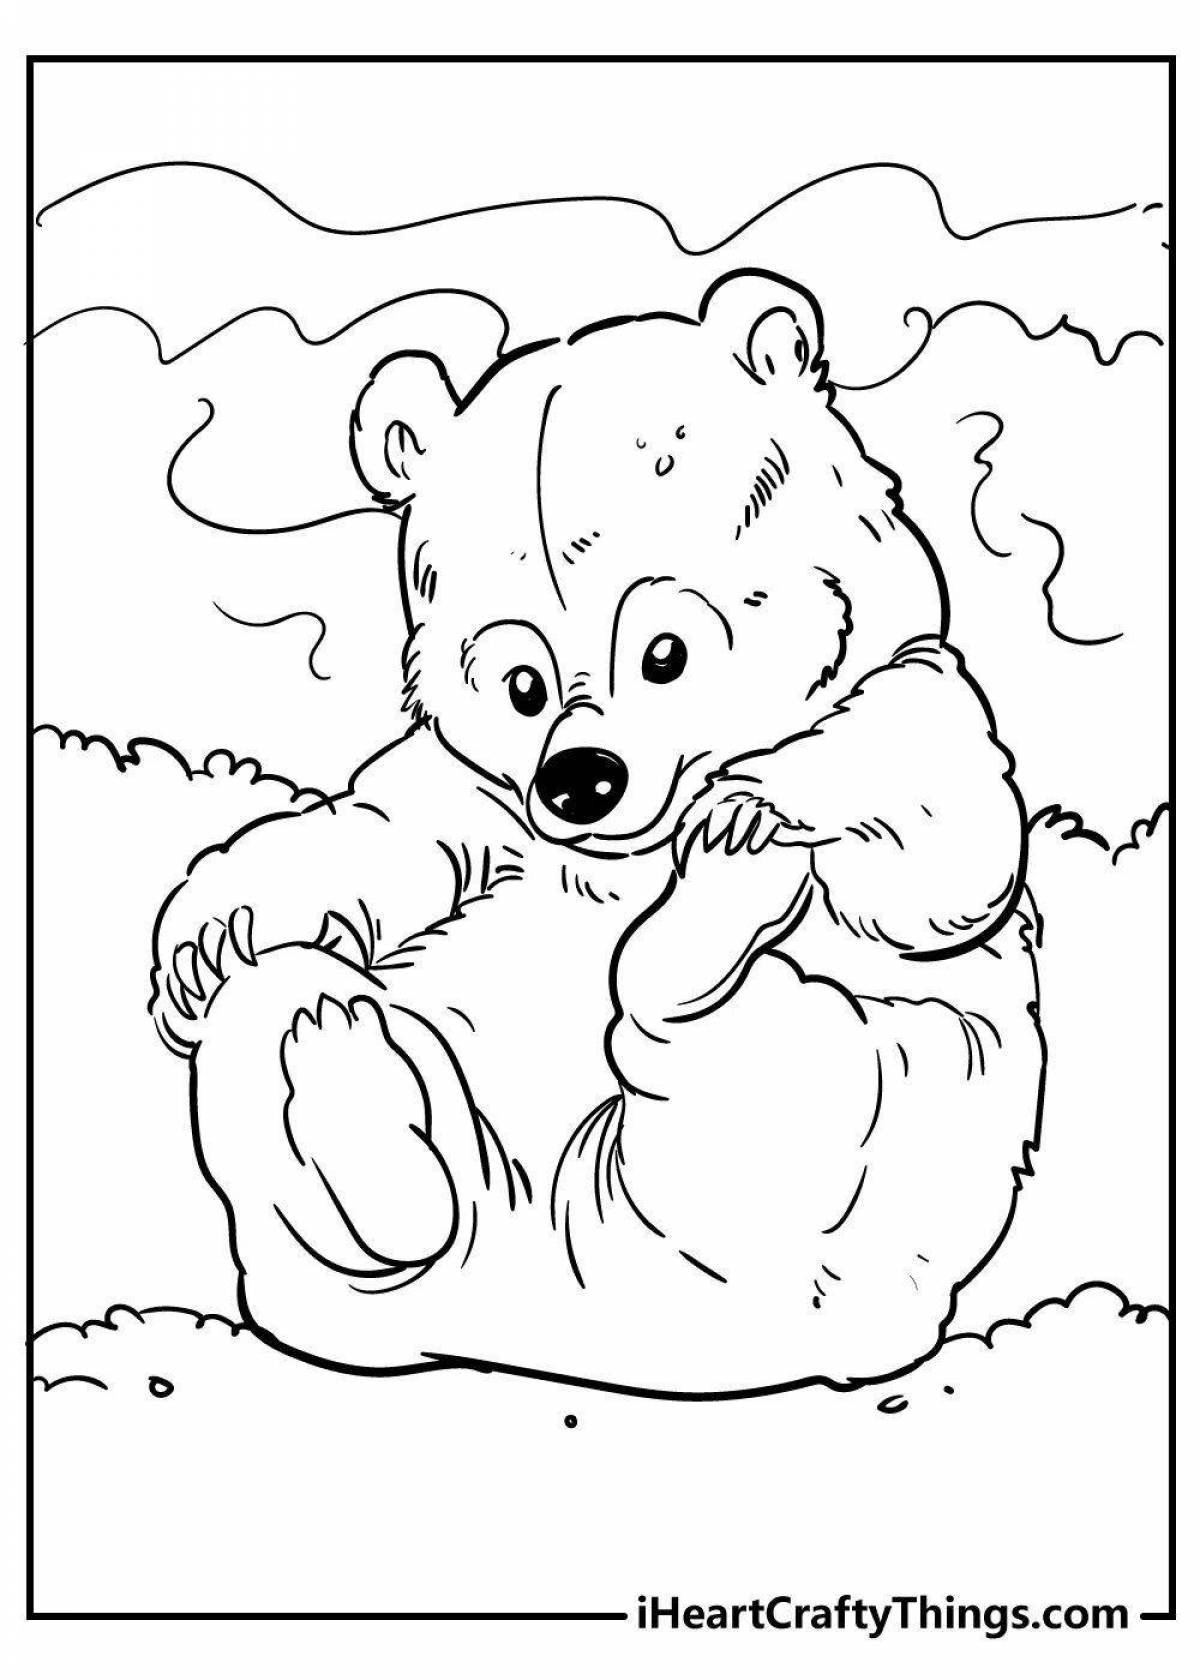 Медведи раскраска игра. Медведь раскраска. Раскраска. Медвежонок. Медвежонок раскраска для детей. Медведь раскраска для детей.